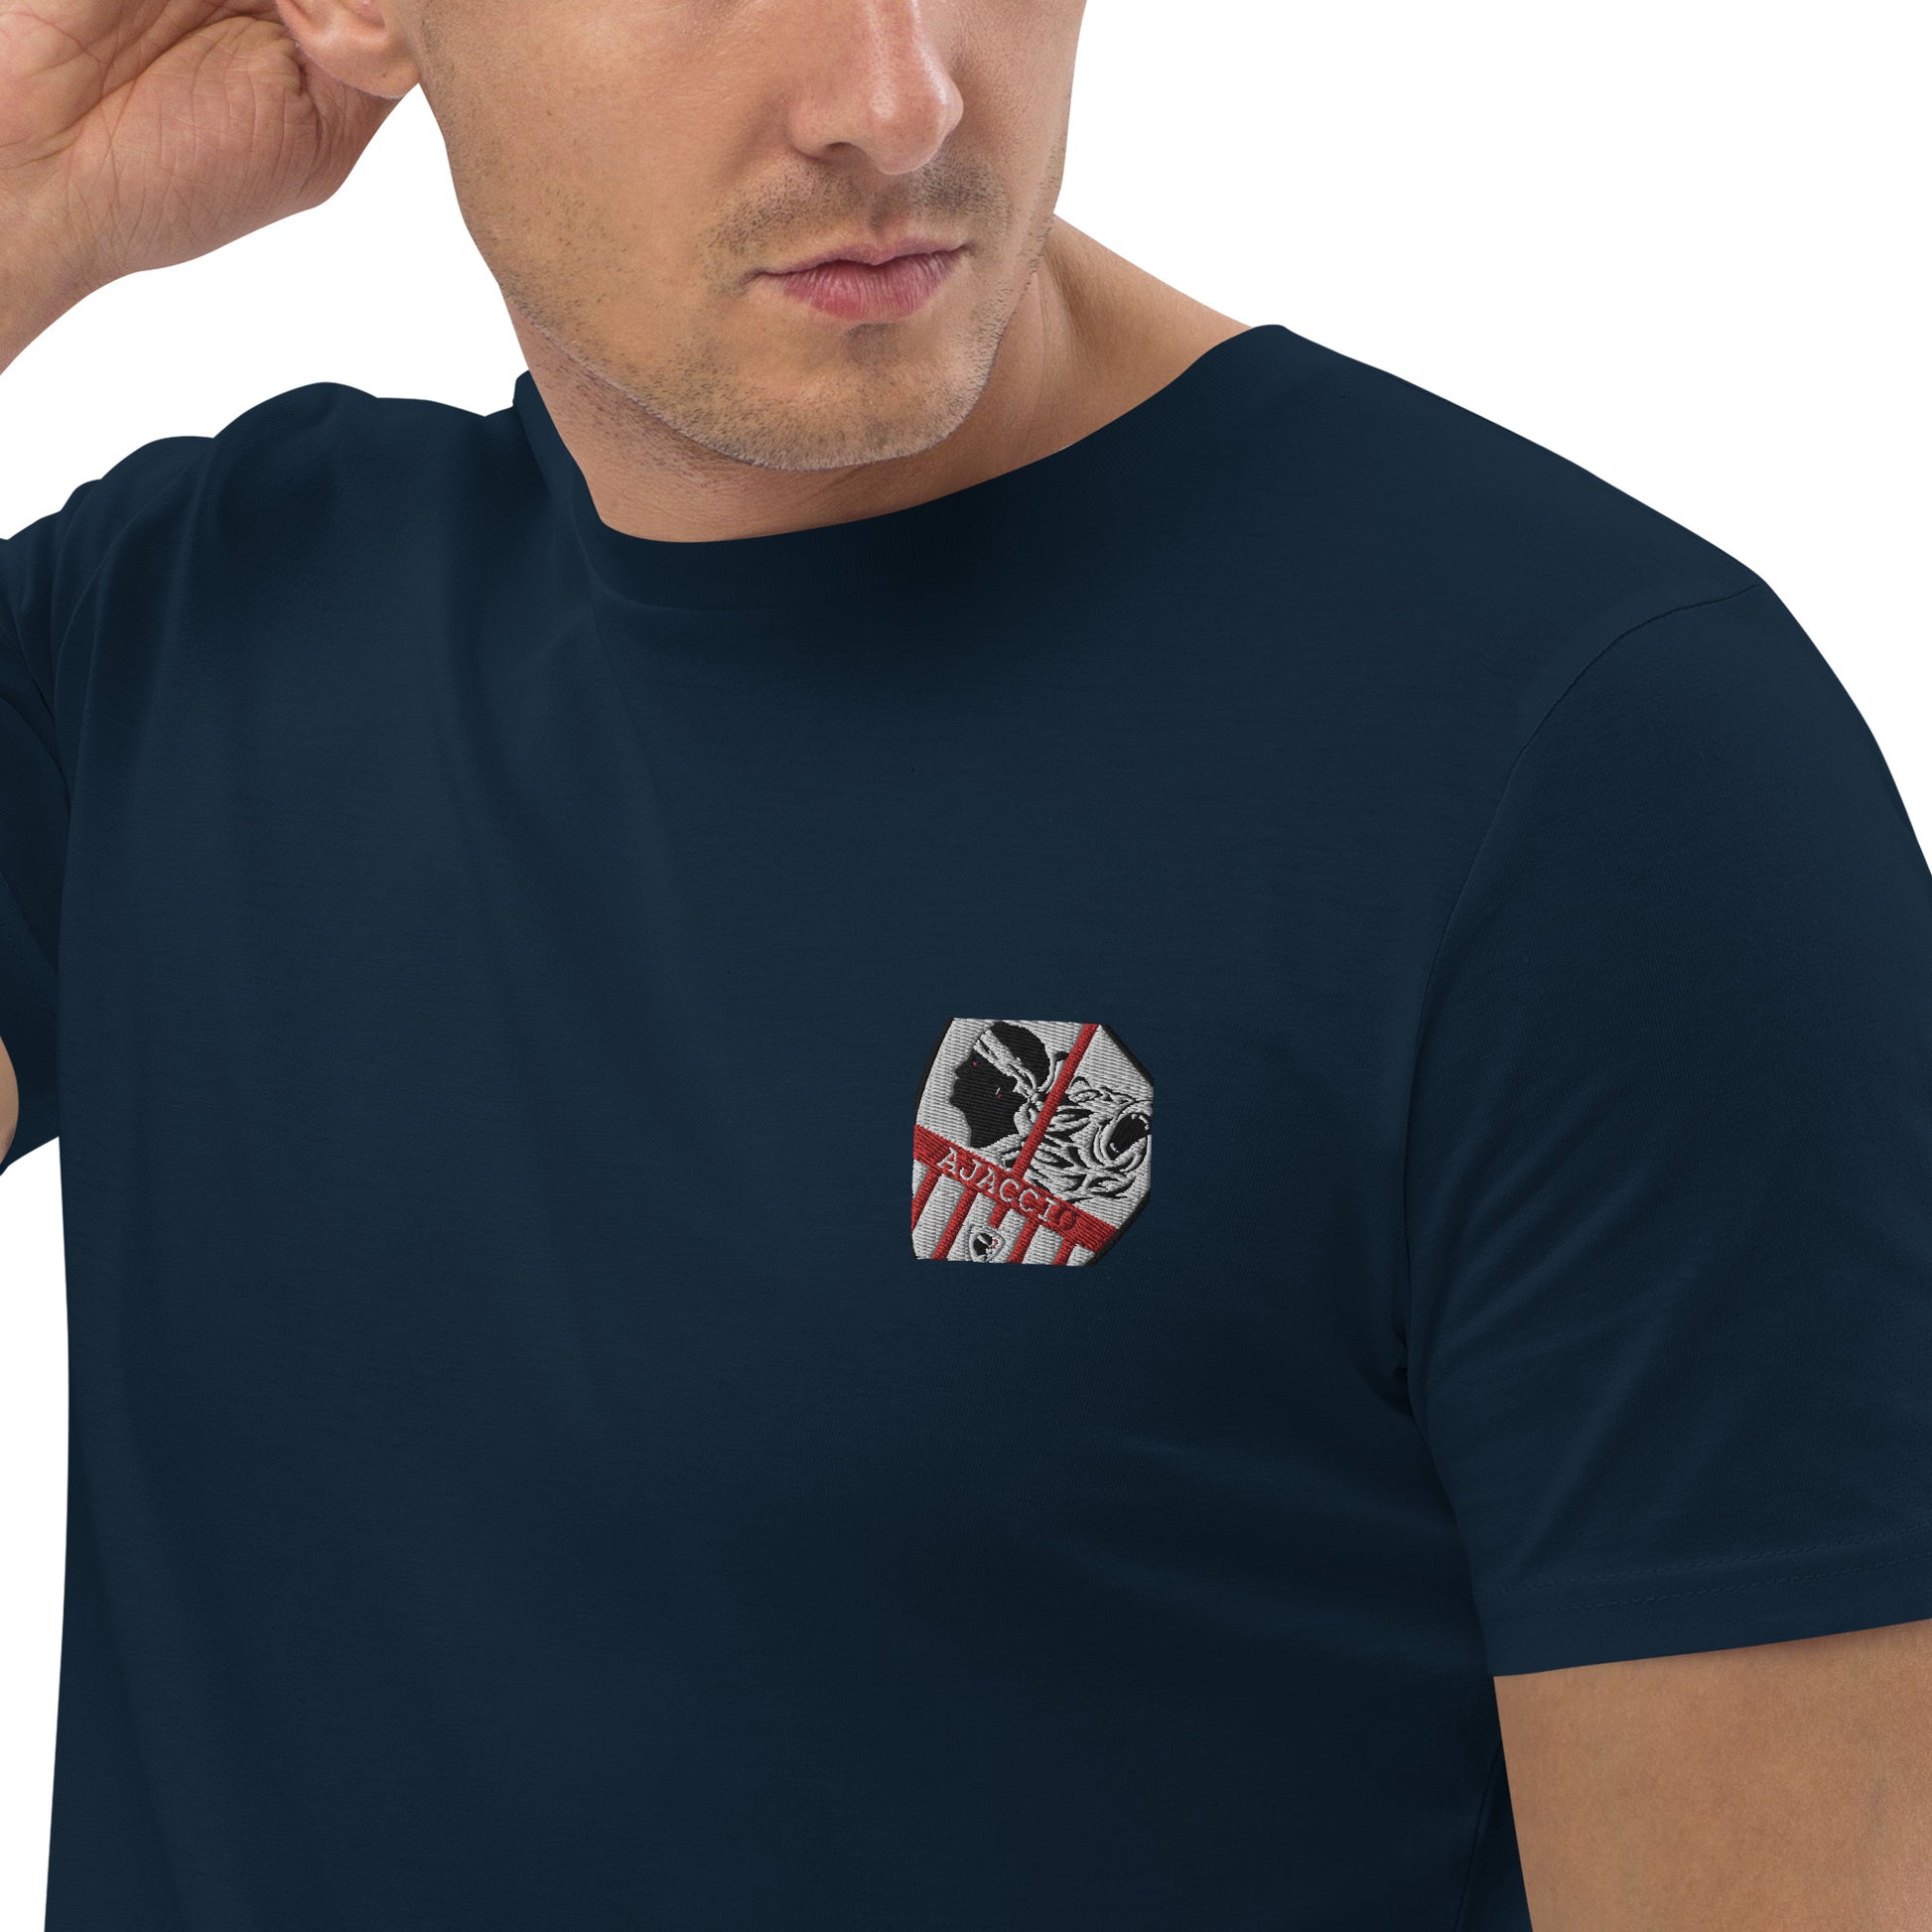 T-shirt unisexe en coton bio Ajaccio - Ochju Ochju French Navy / S Ochju T-shirt unisexe en coton bio Ajaccio